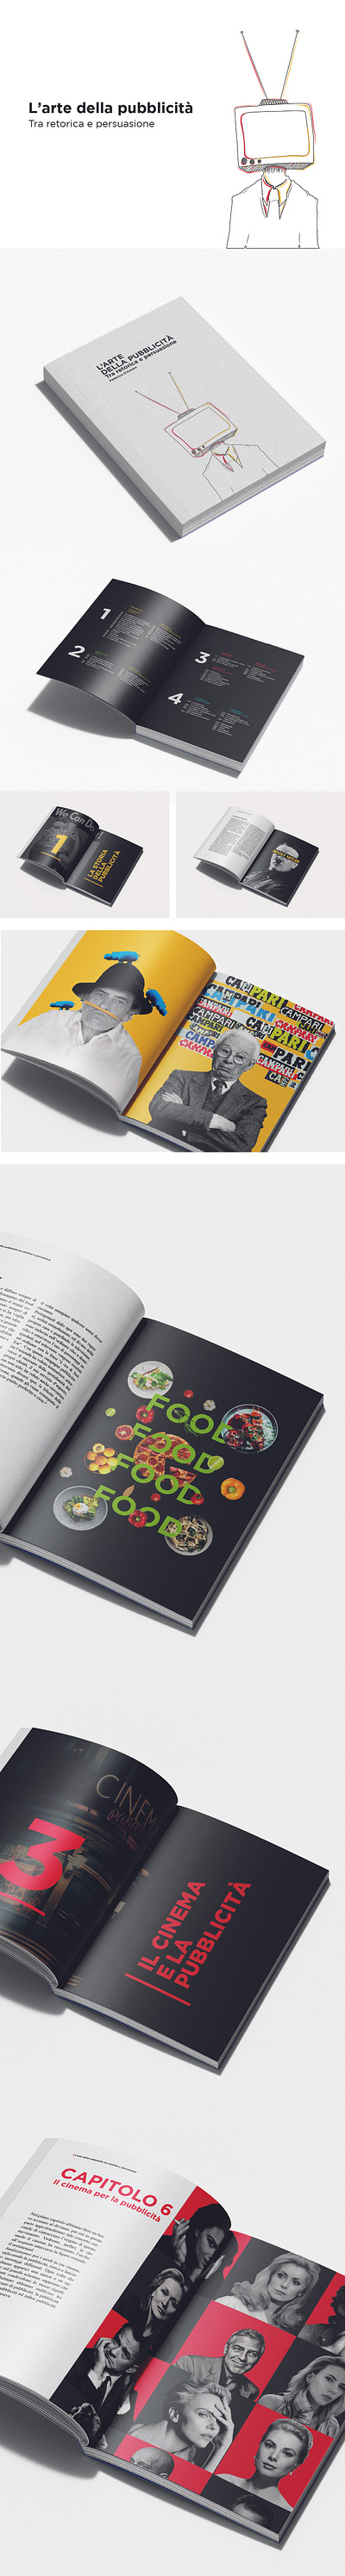 Tesi di Laurea Triennale - L'arte della pubblicità advertising comunication design editorial graphic design illustrator indesign tesi